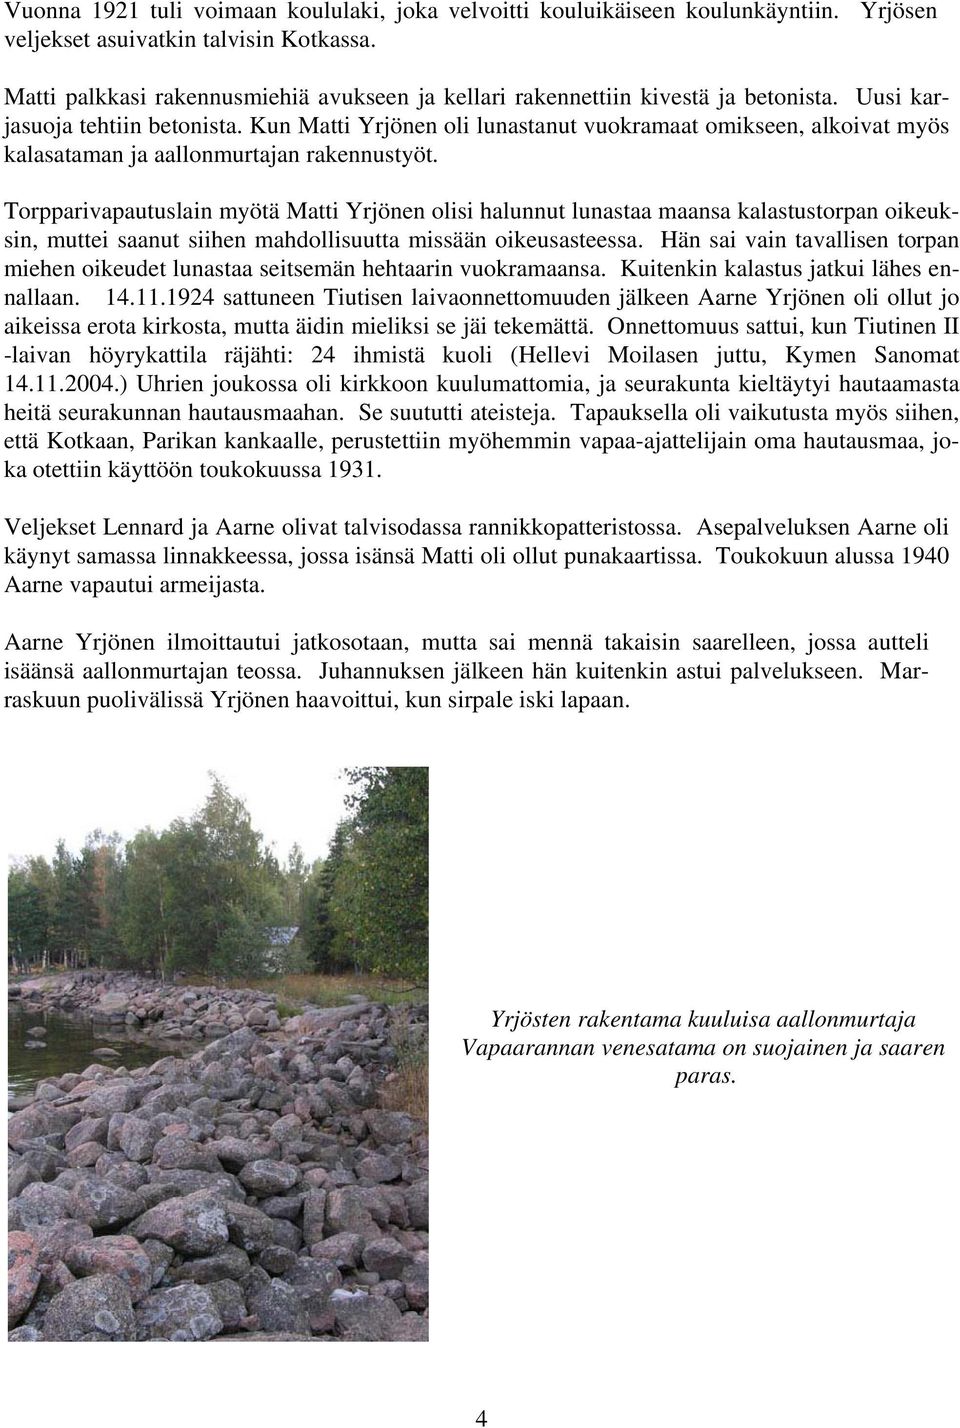 Kun Matti Yrjönen oli lunastanut vuokramaat omikseen, alkoivat myös kalasataman ja aallonmurtajan rakennustyöt.